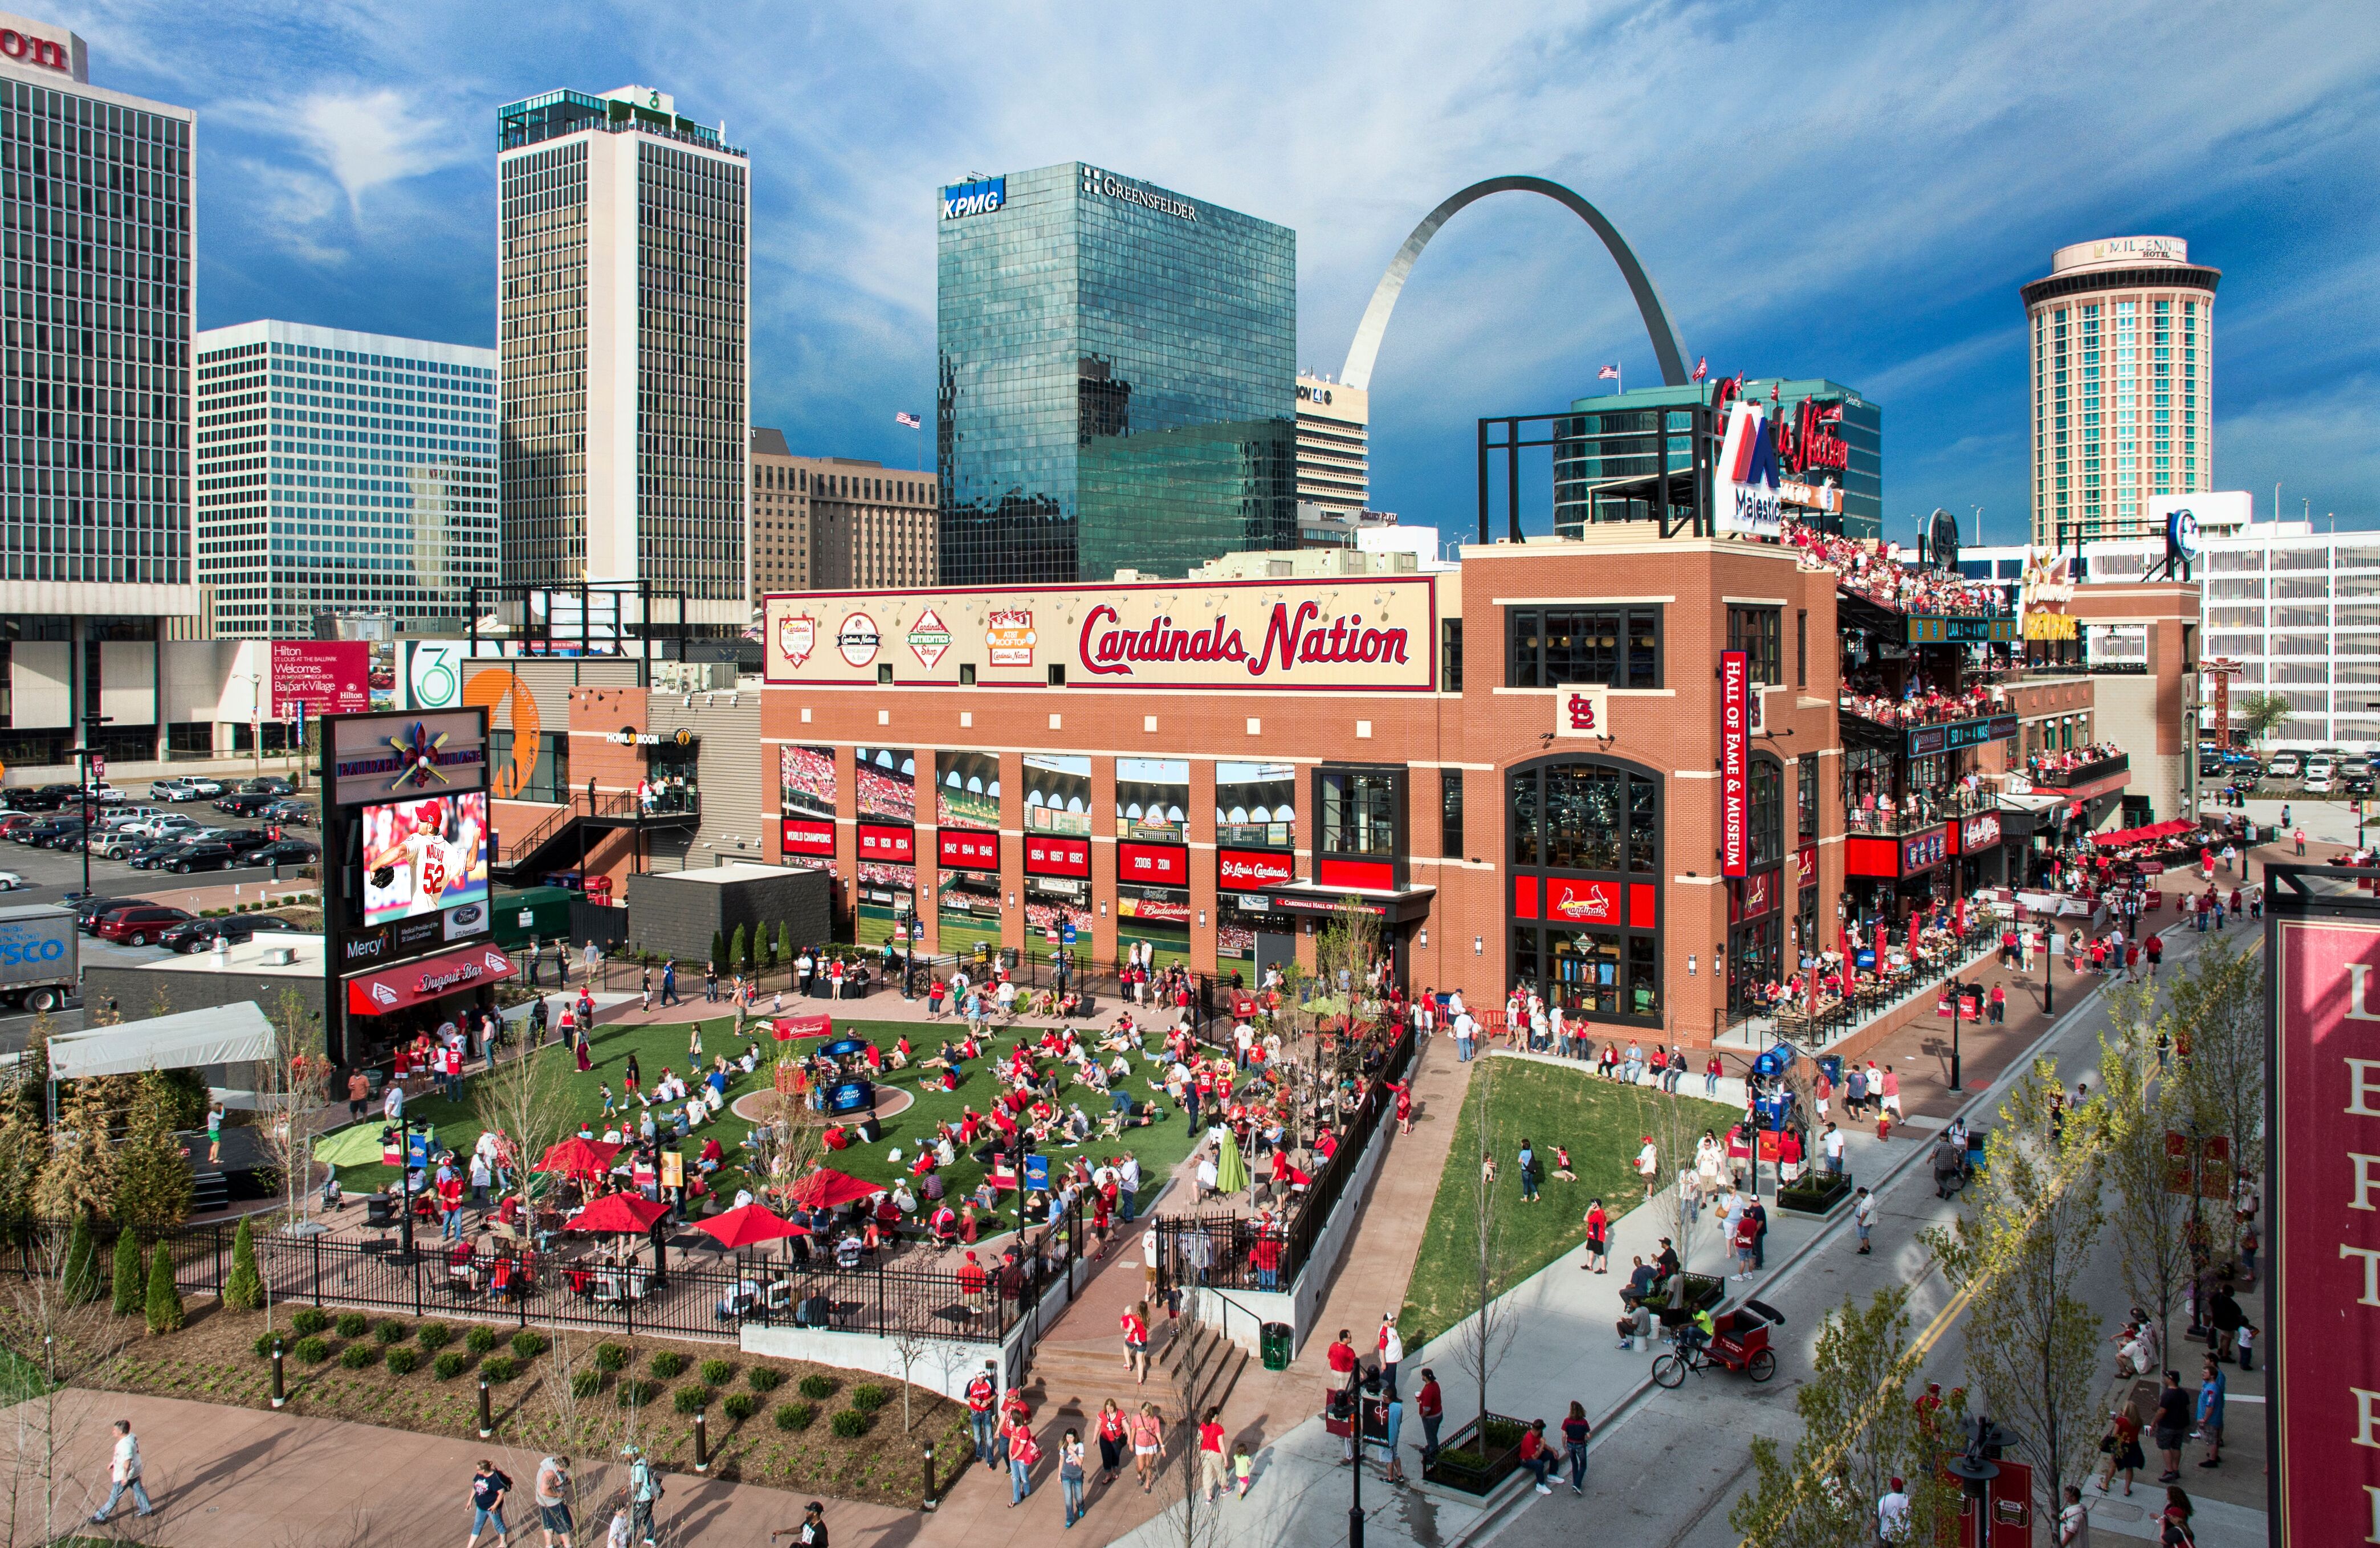 Cardinals Authentics Shop - Explore St. Louis